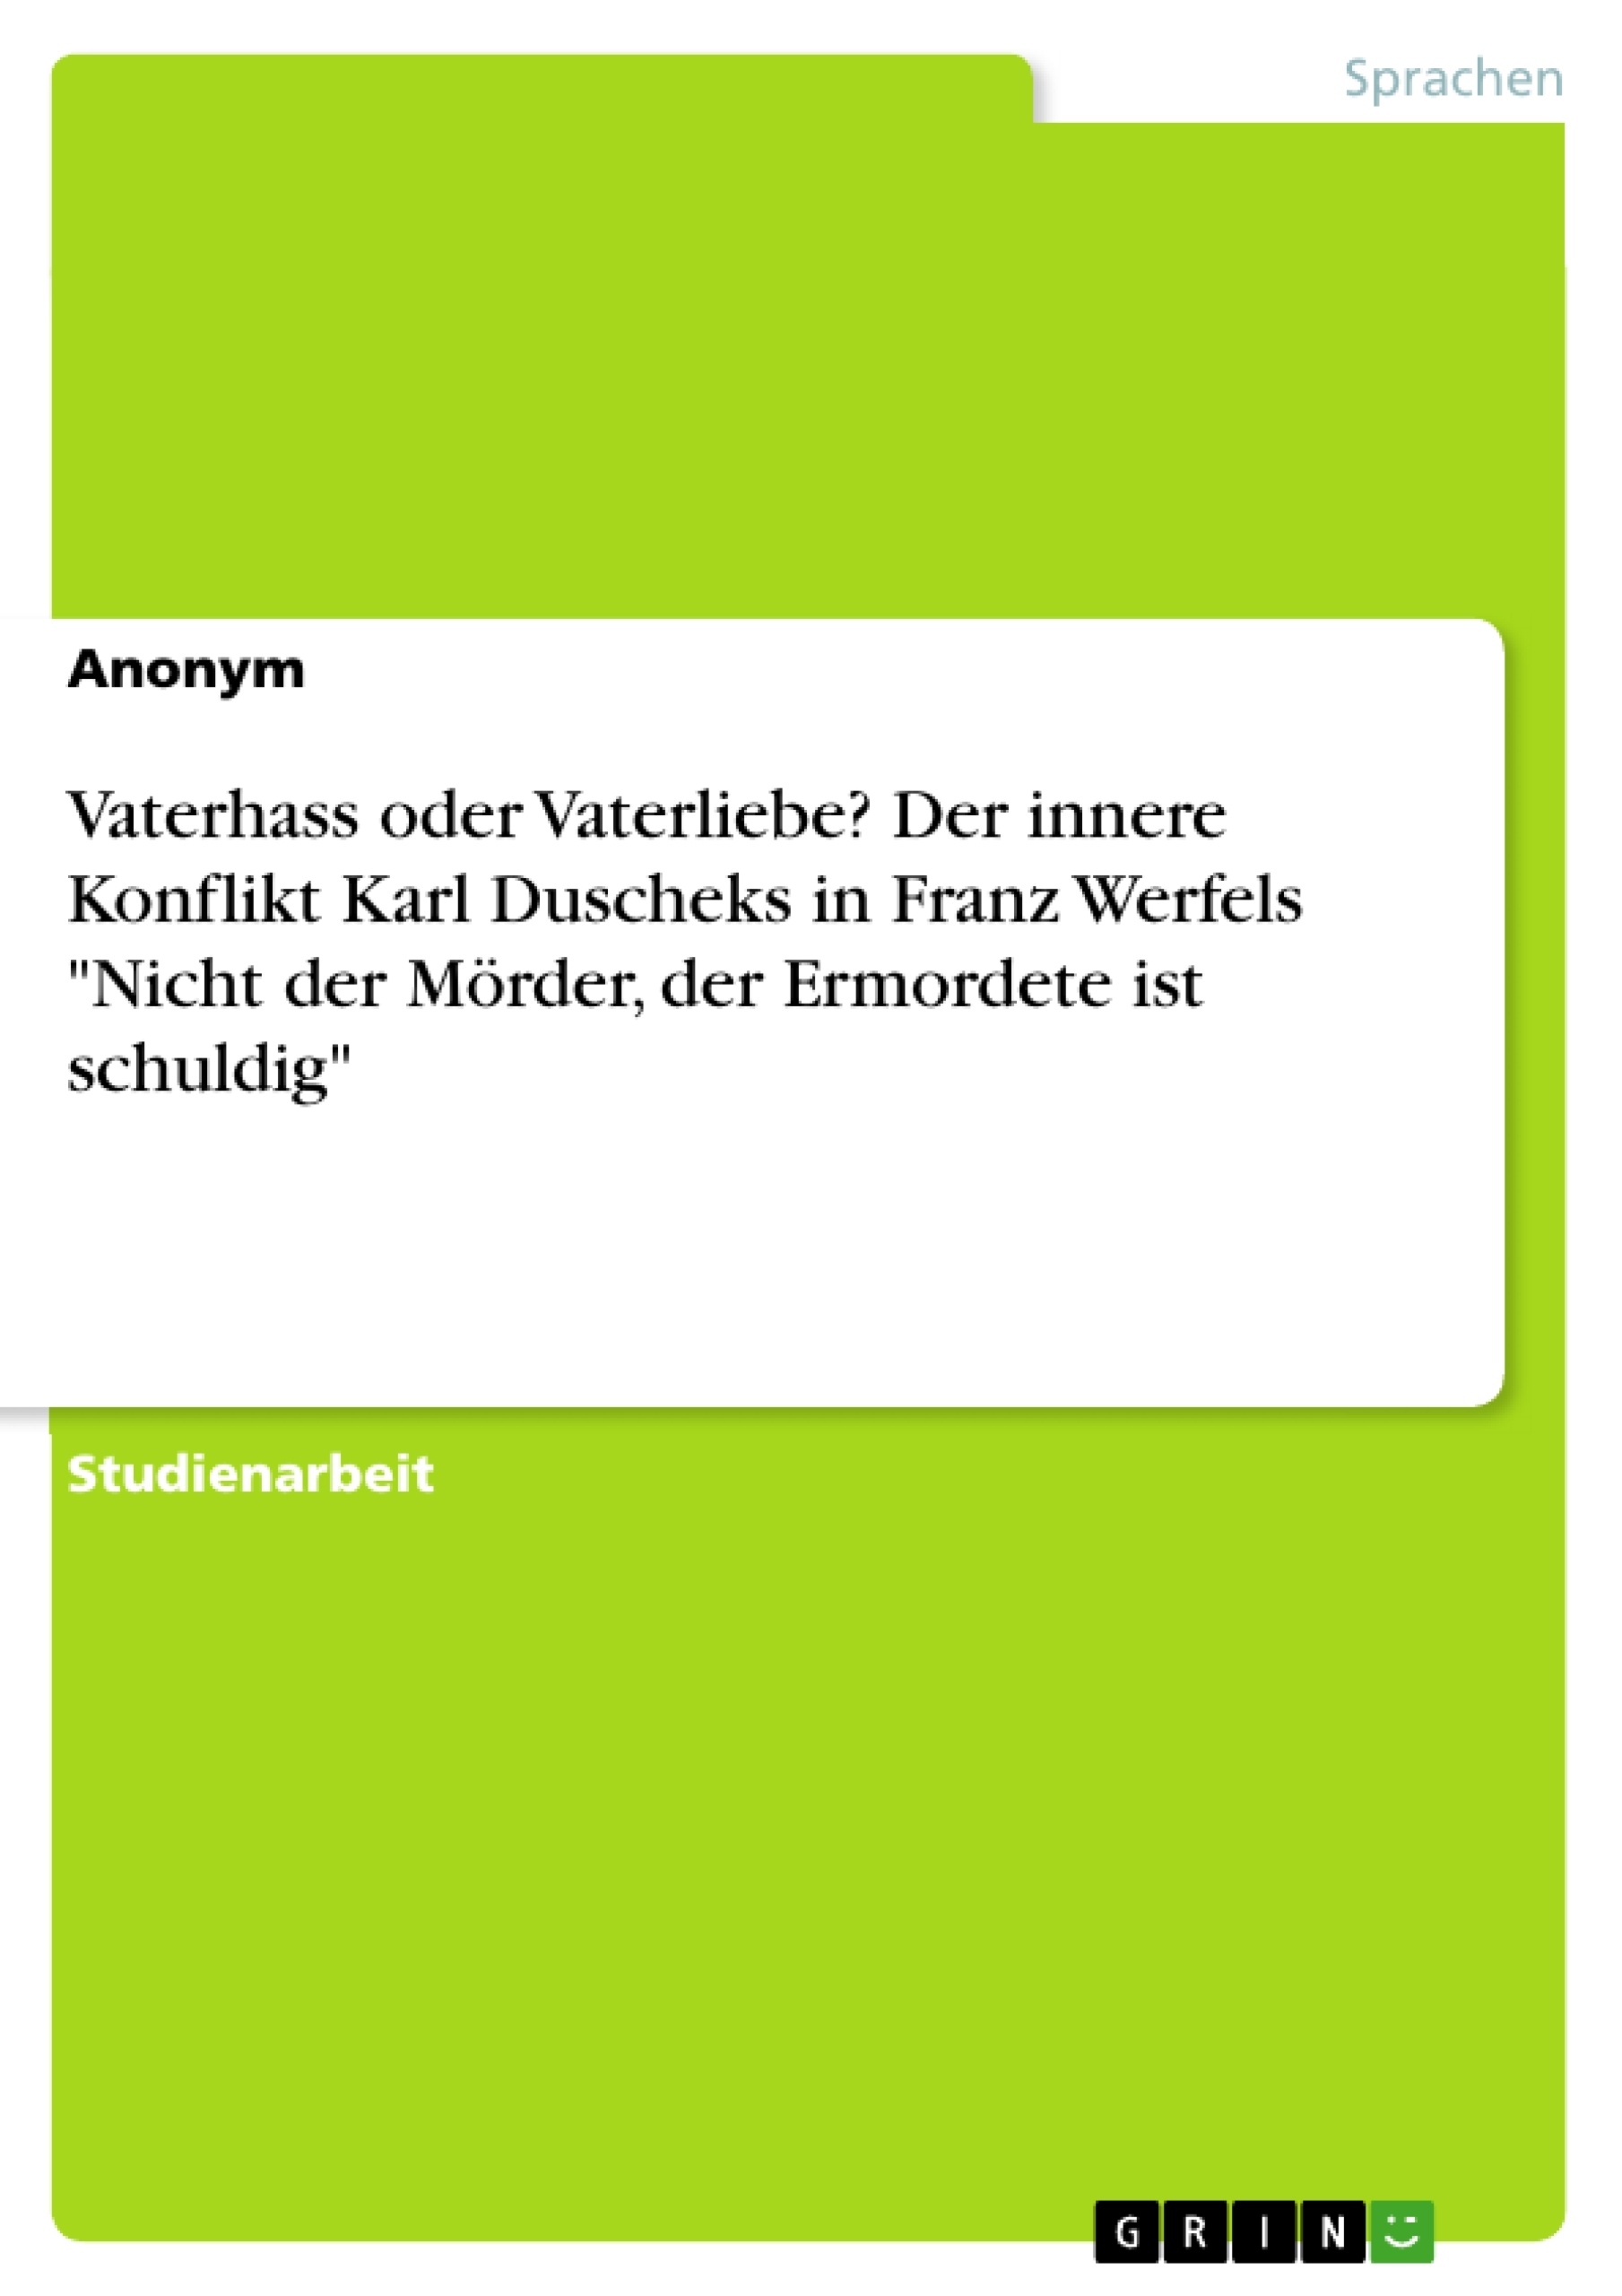 Titre: Vaterhass oder Vaterliebe? Der innere Konflikt Karl Duscheks in Franz Werfels "Nicht der Mörder, der Ermordete ist schuldig"